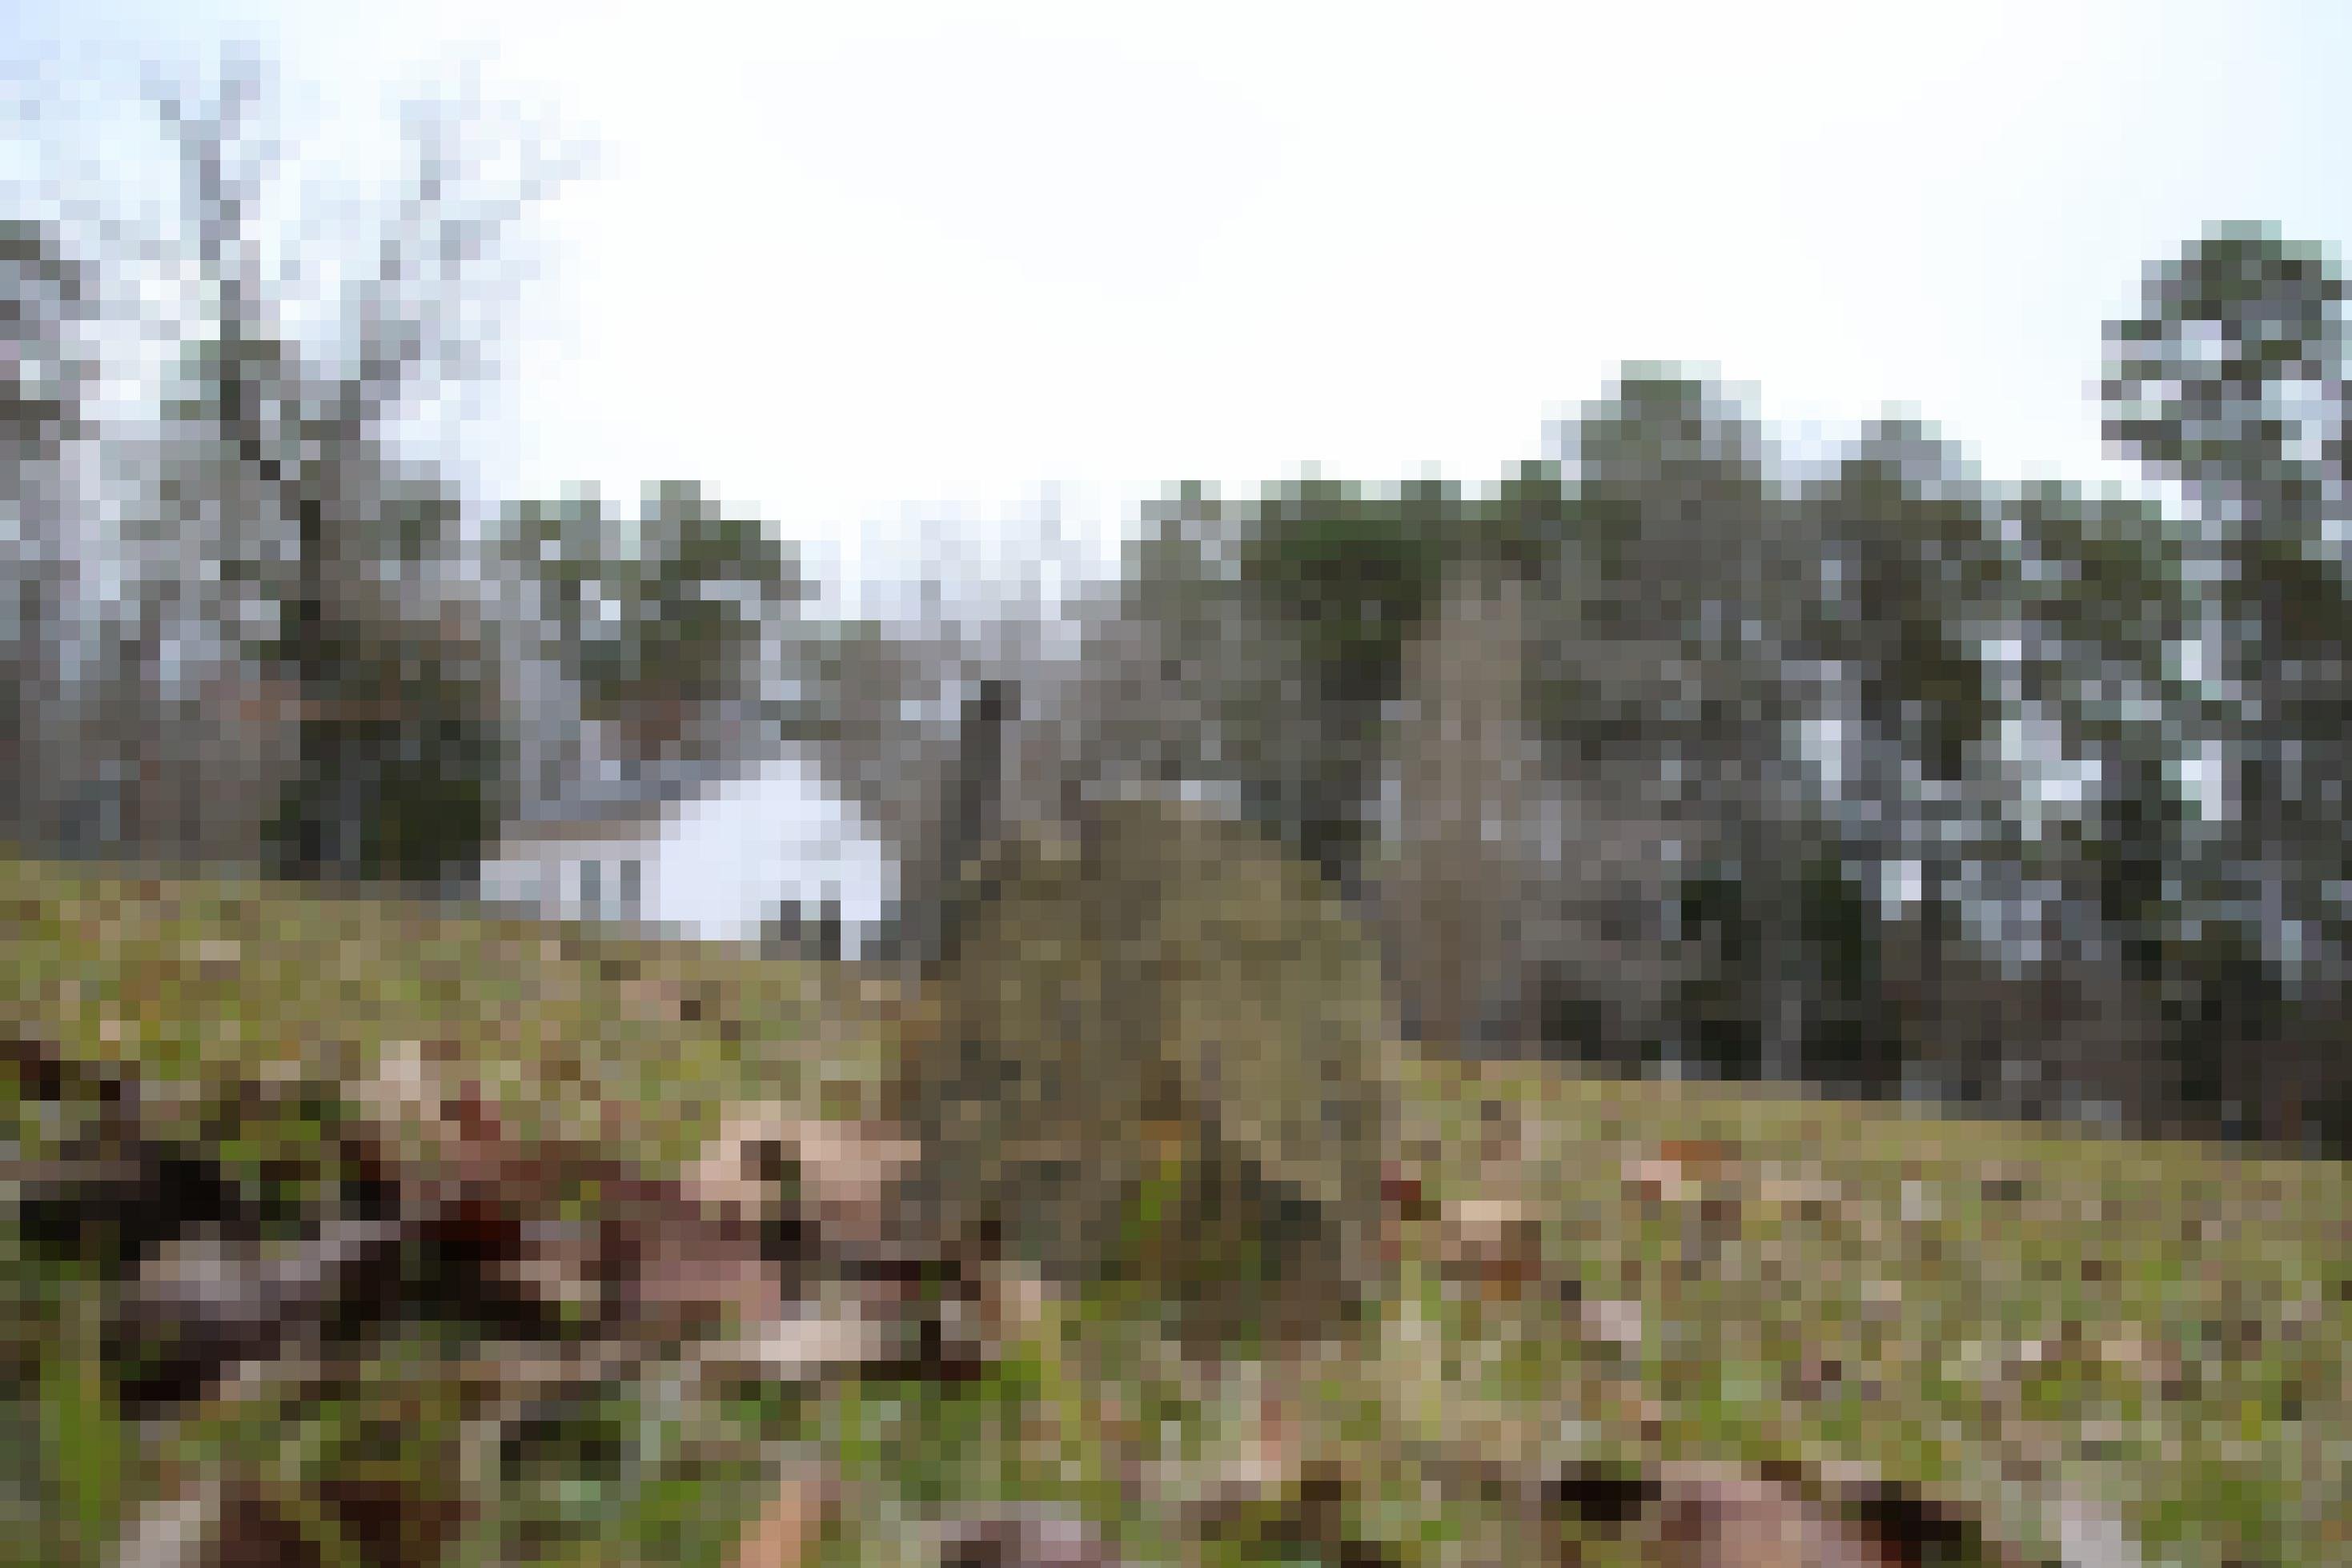 Ein Stein liegt auf einer Rasenfläche. Im Hintergrund sind Grabsteine zu sehen.